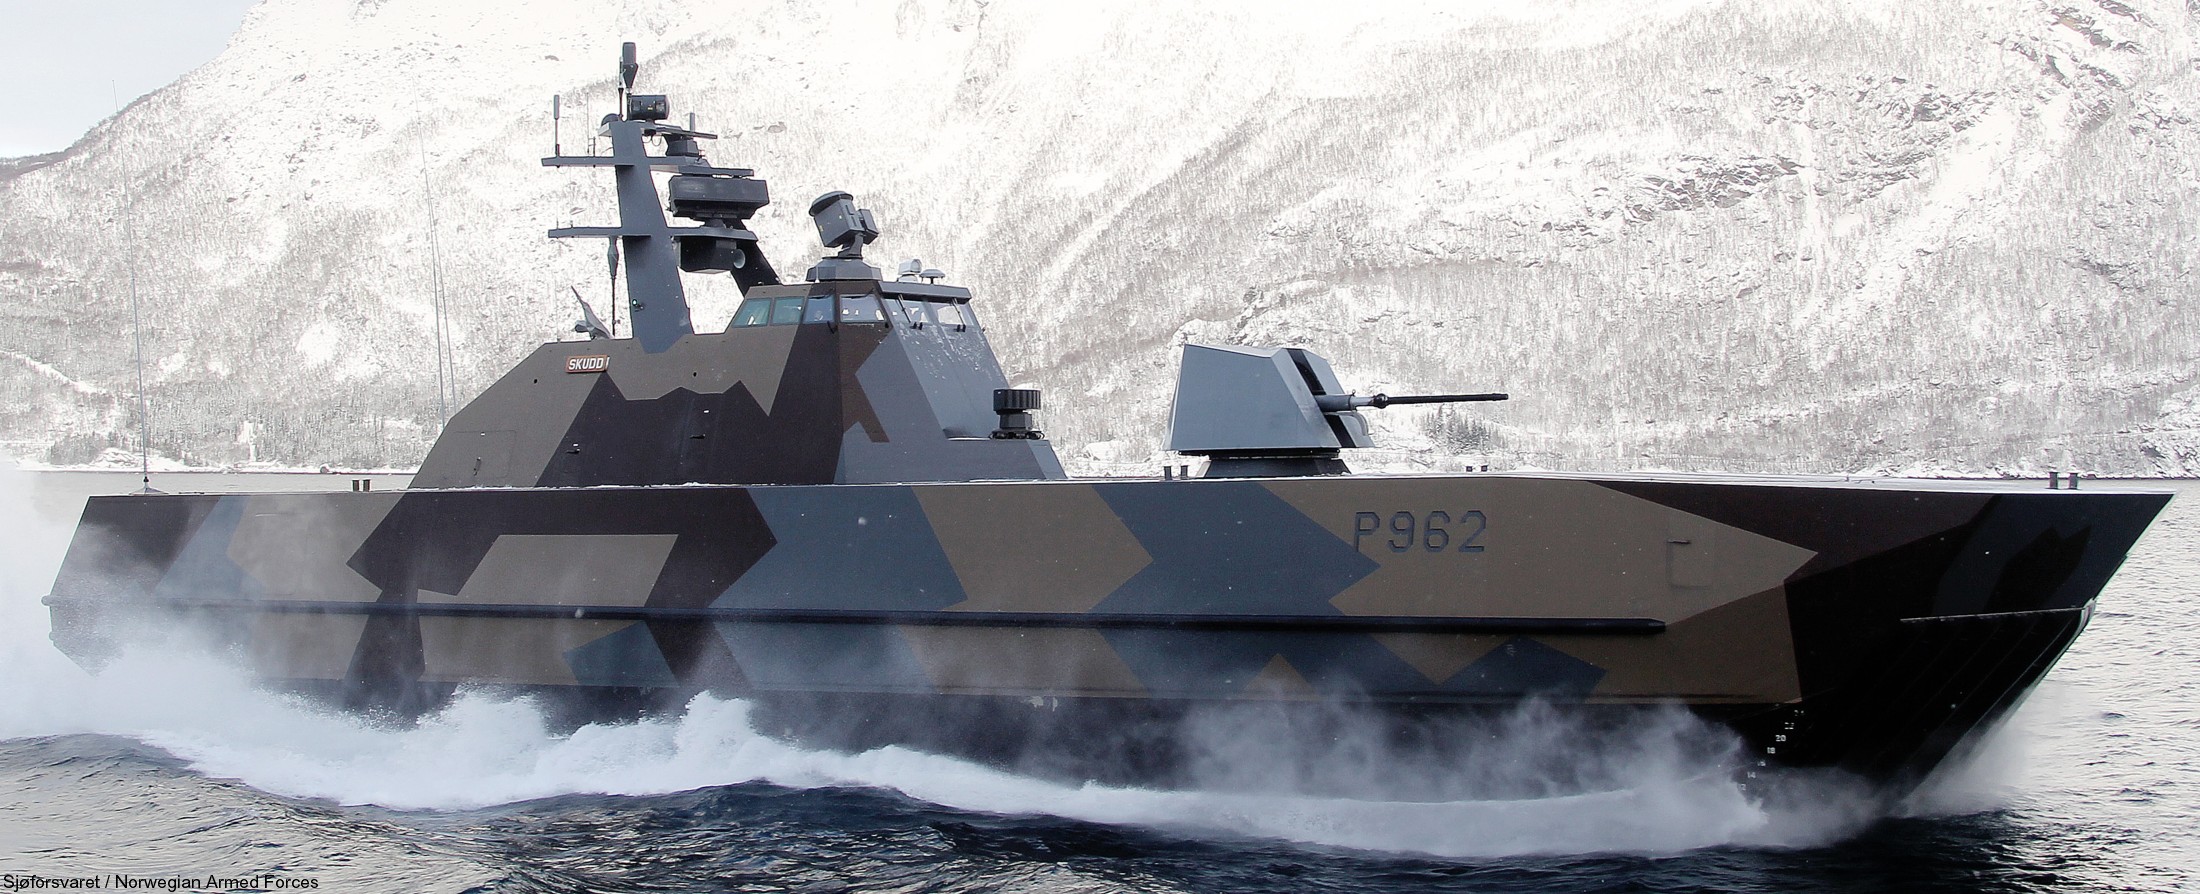 p-962 skudd knm hnoms skjold class corvette royal norwegian navy sjoforsvaret 09